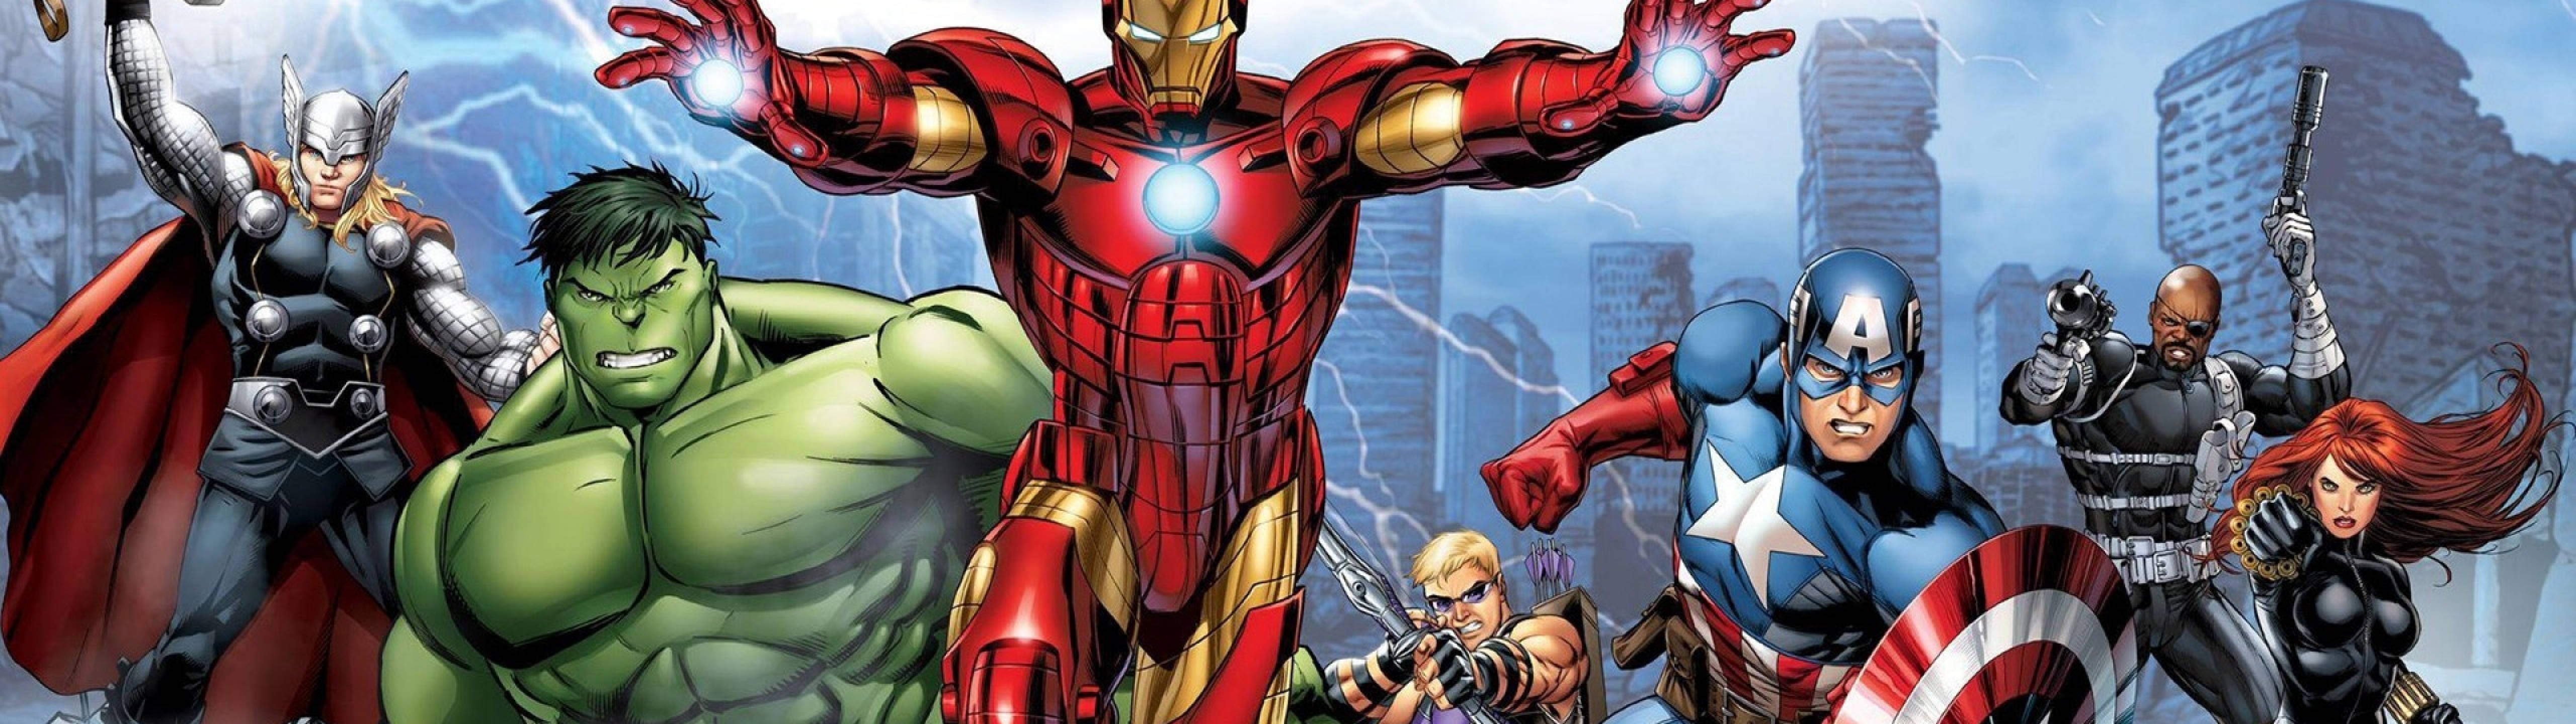 Download Marvel Cartoon Heroes 5120 X 1440 Wallpaper 